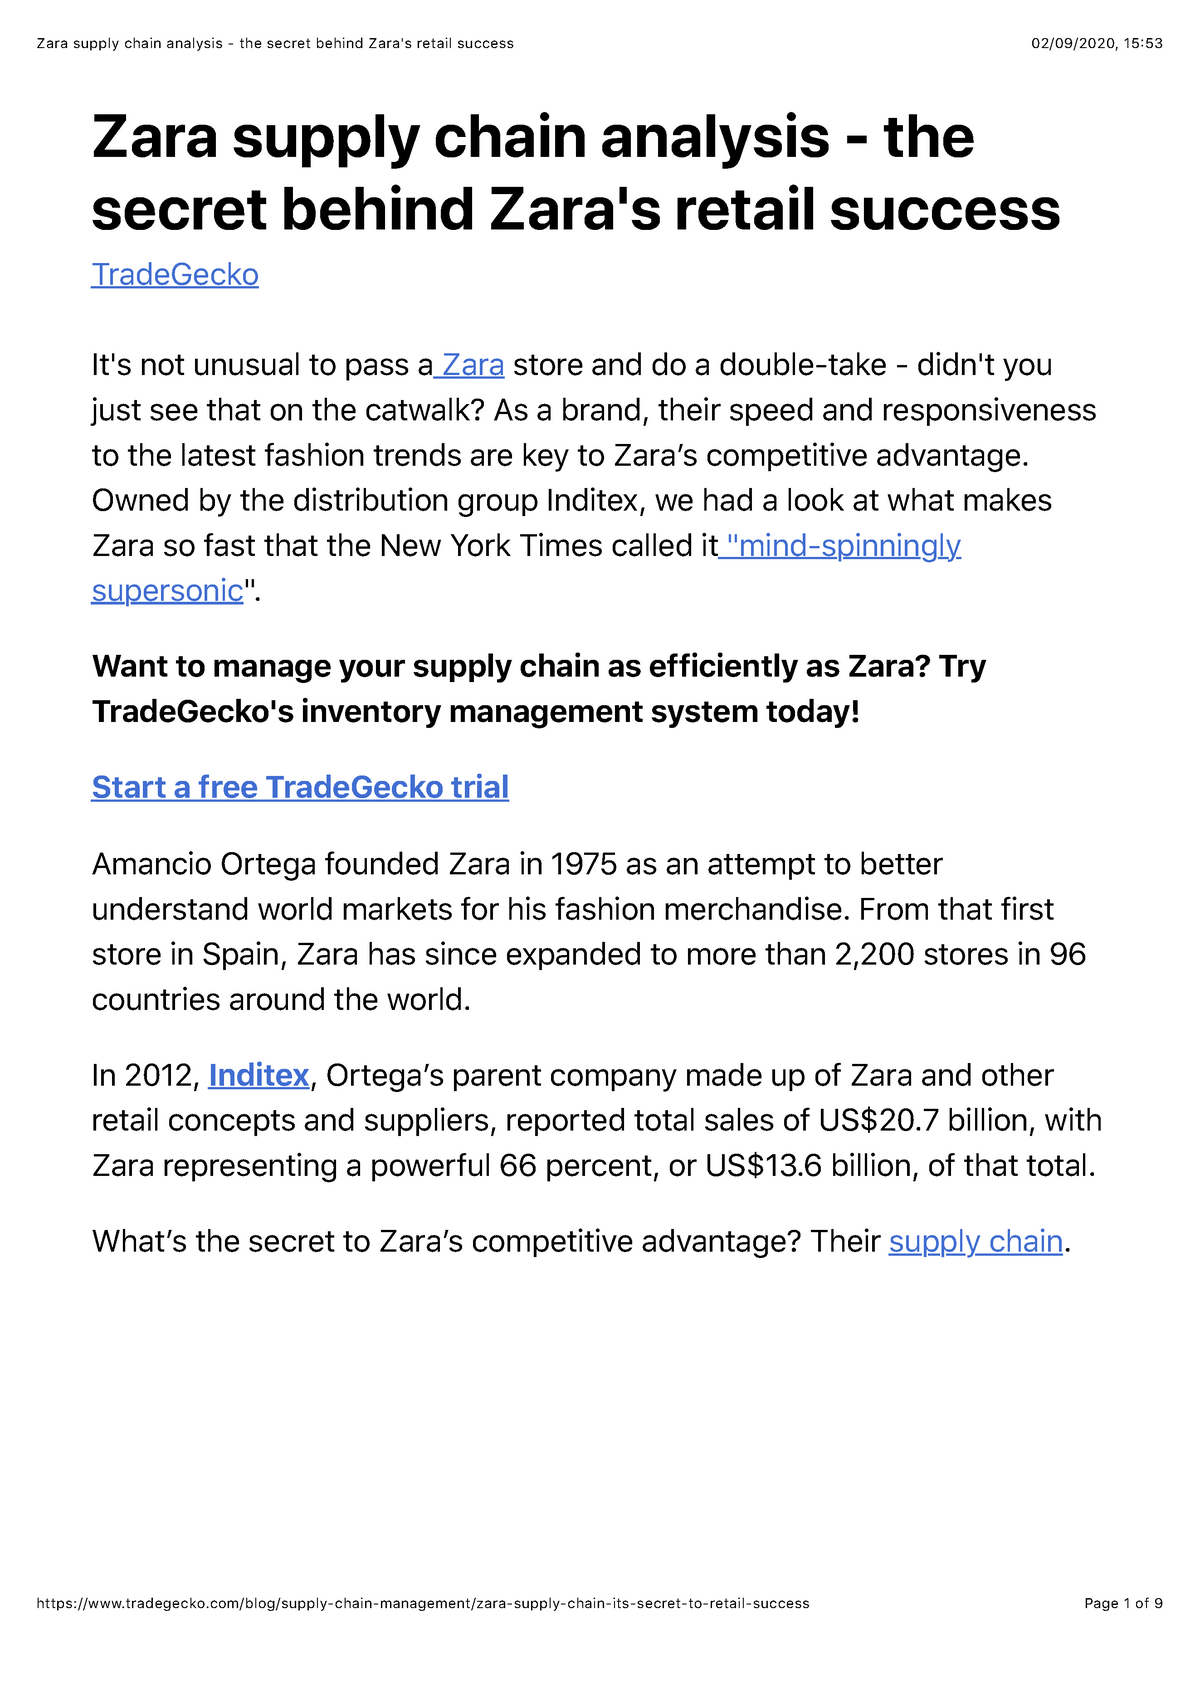 Zara Supply Chain Analysis The Secret Behind Zaras Retail Success Zara Supply Chain